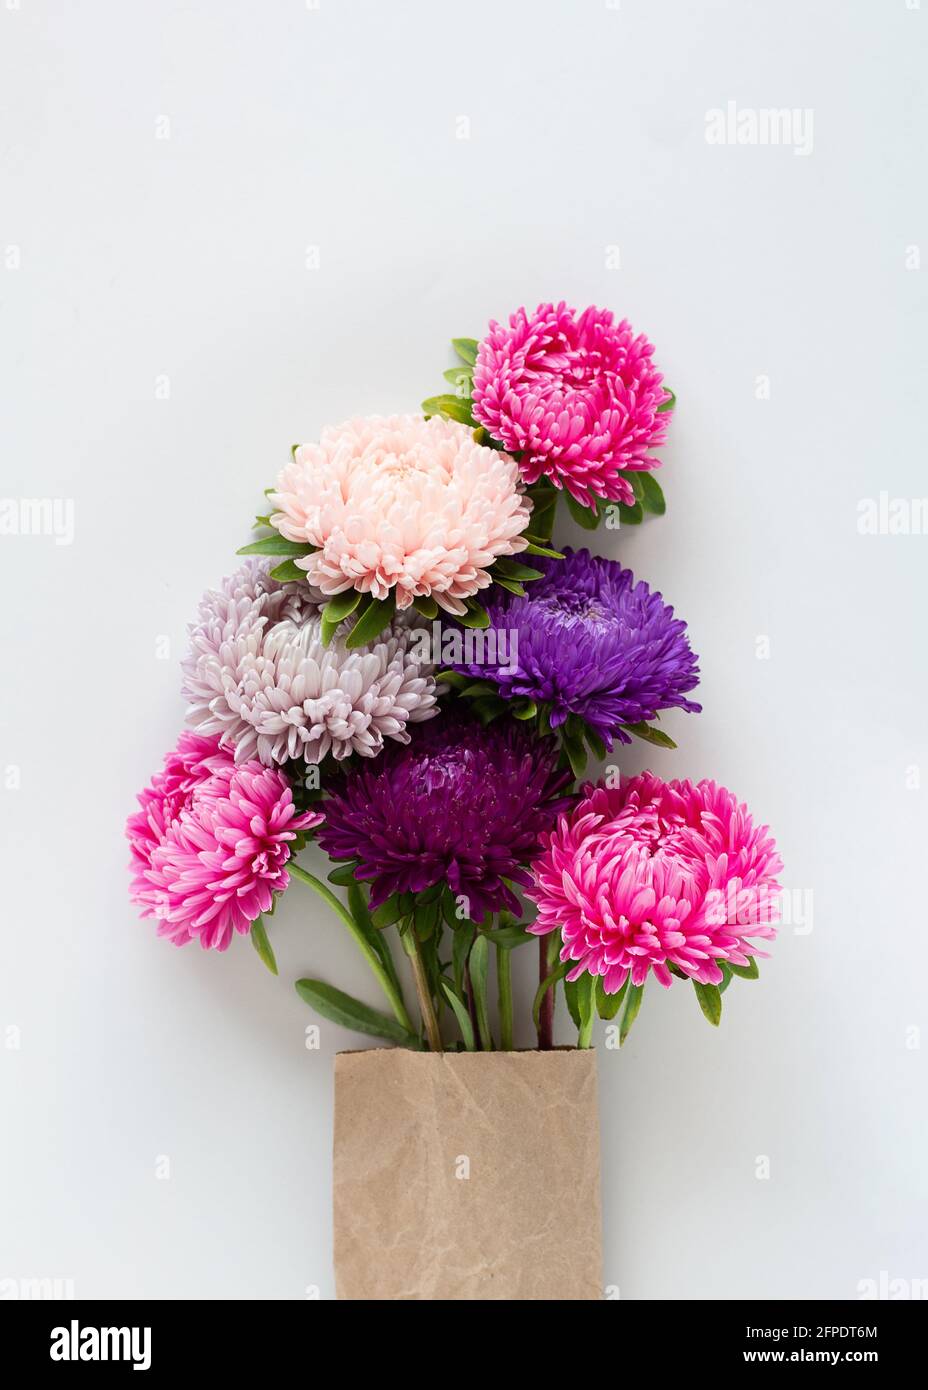 Bel bouquet di coloratissimi asters impaccati in carta artigianale su sfondo grigio chiaro. Foto Stock